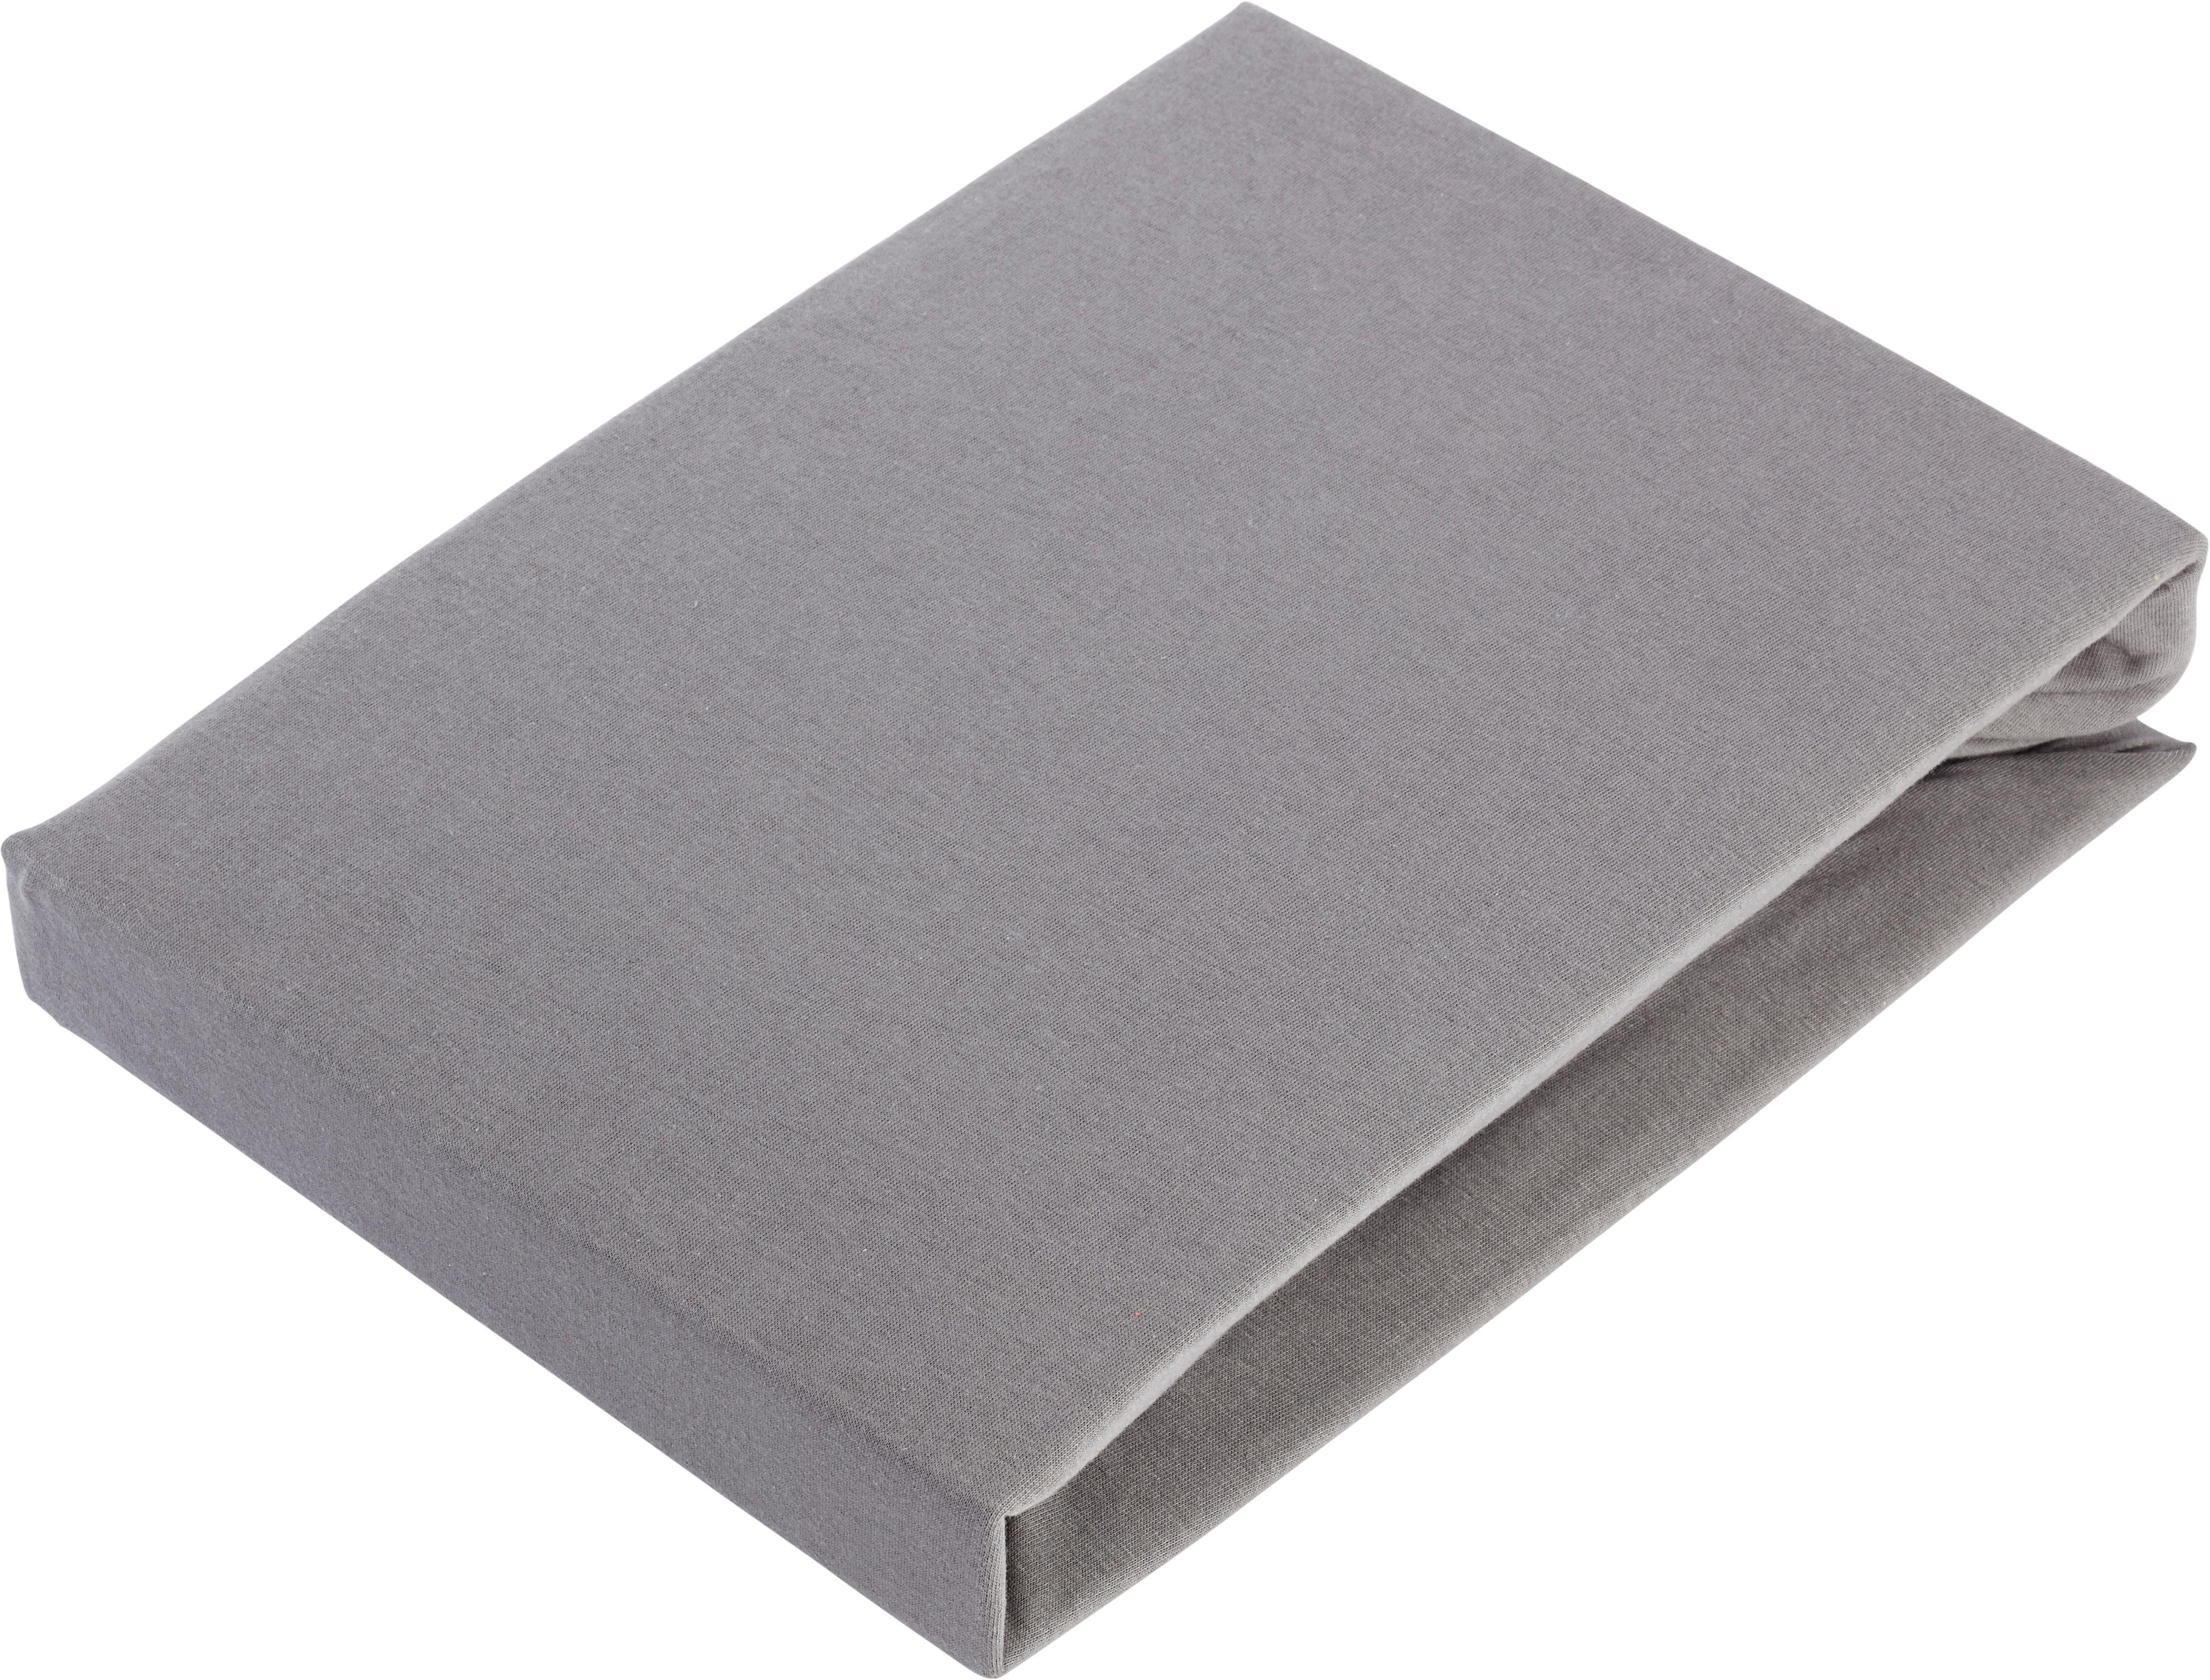 Elastické Prostěradlo Basic, 150/200 Cm - šedá, textil (150/200cm) - Modern Living